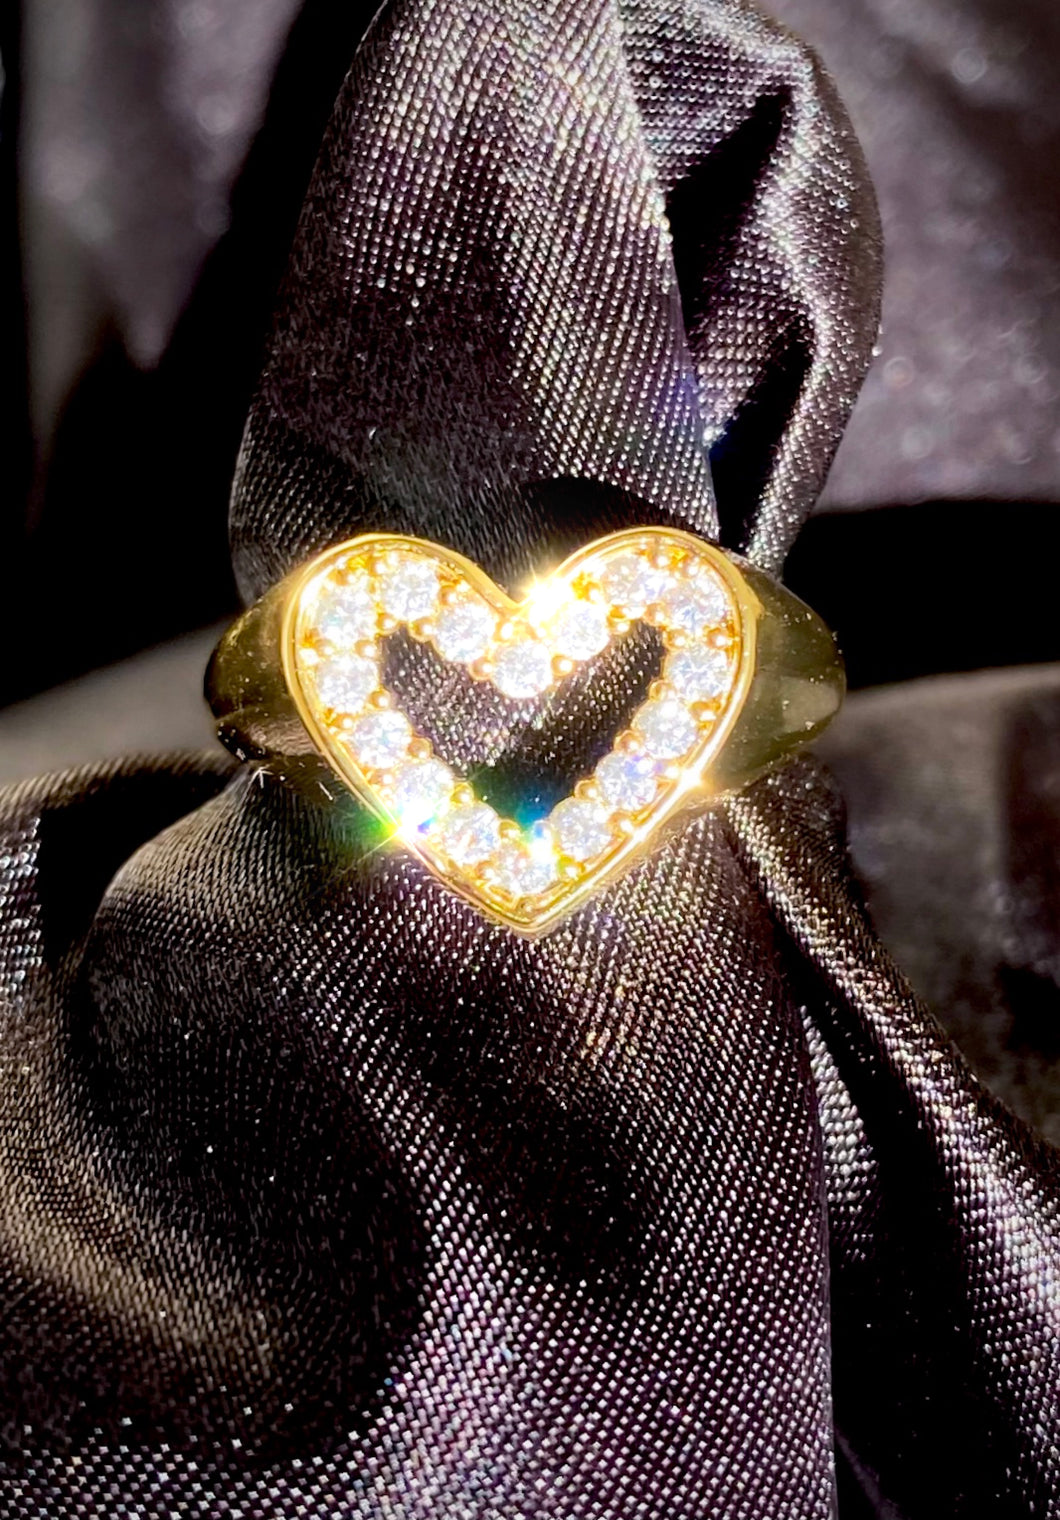 24k Diamond Heart Signet Ring